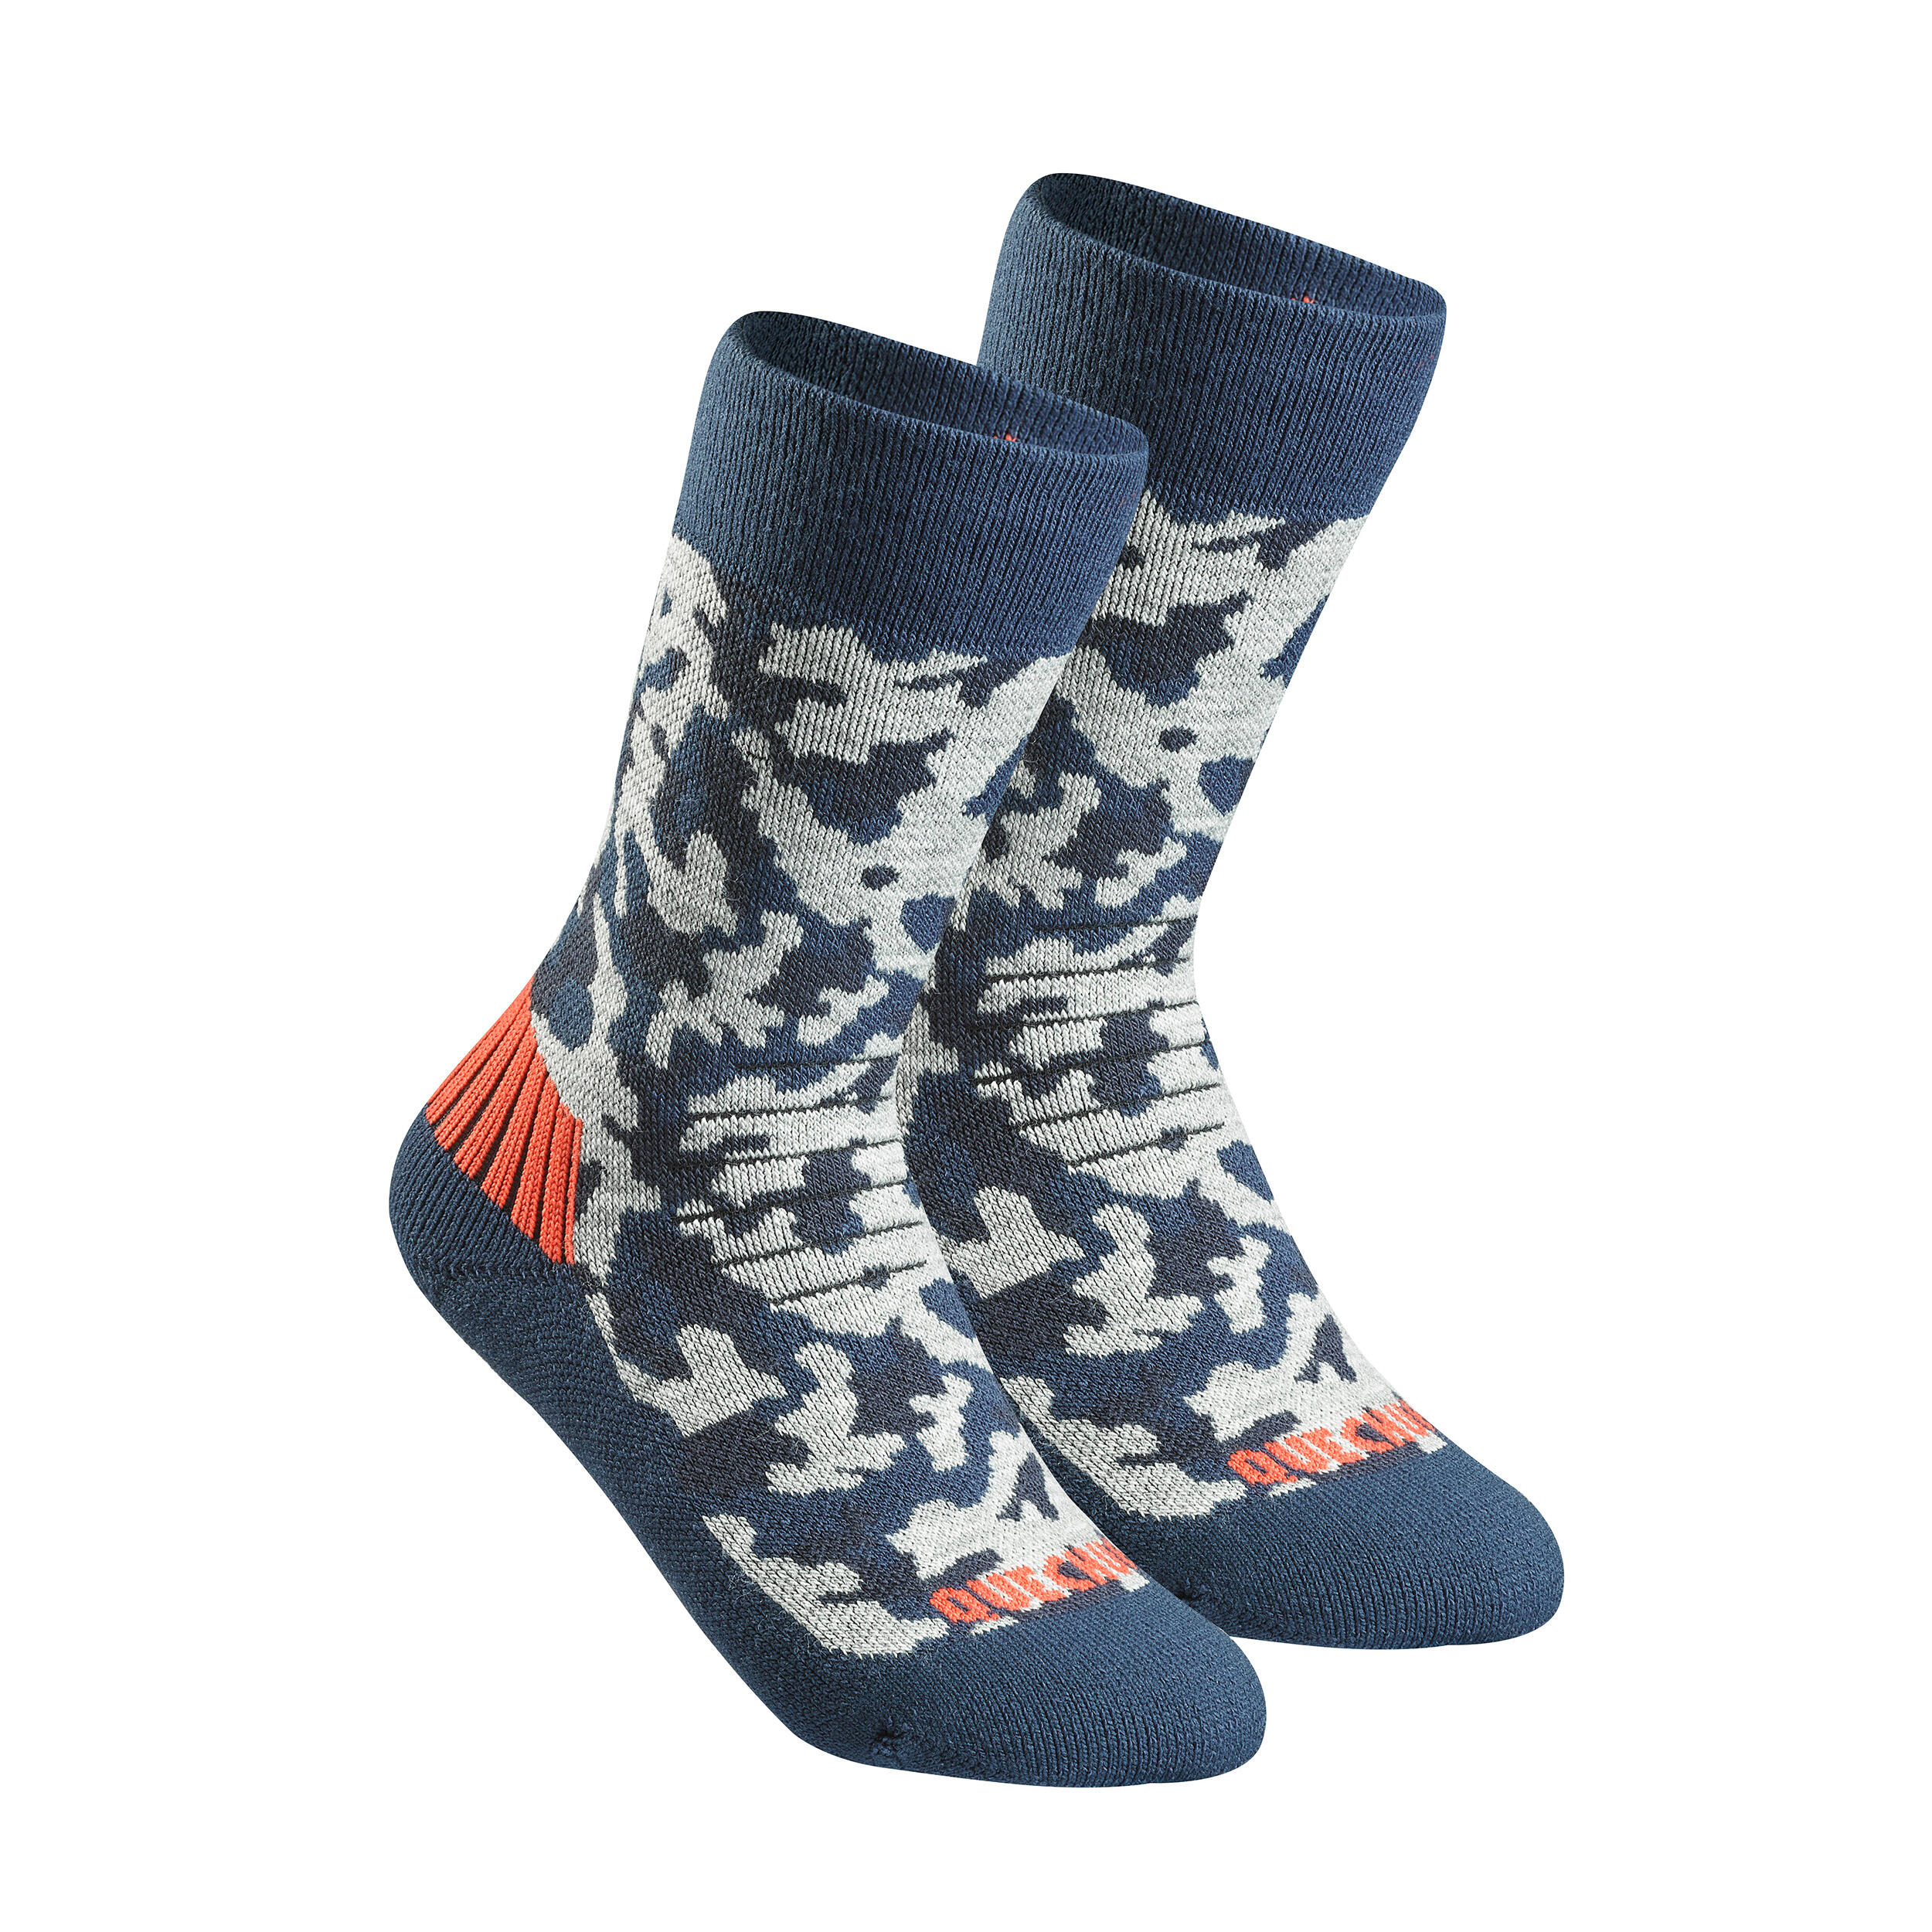 Kids’ Warm Hiking Socks SH100 Mid 2 Pairs 2/7